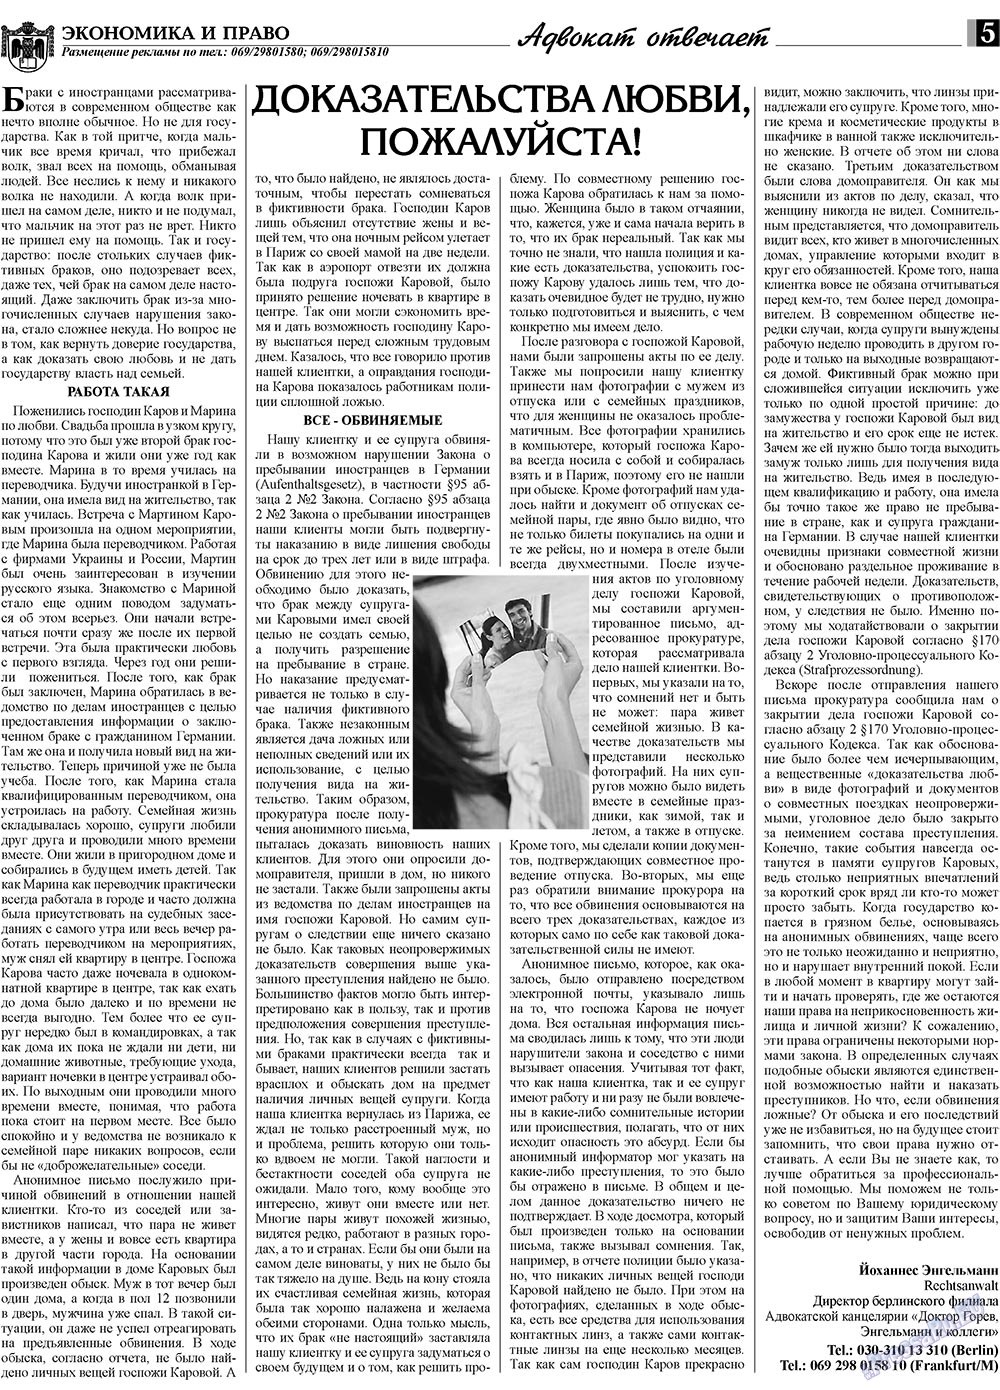 Экономика и право, газета. 2009 №9 стр.5